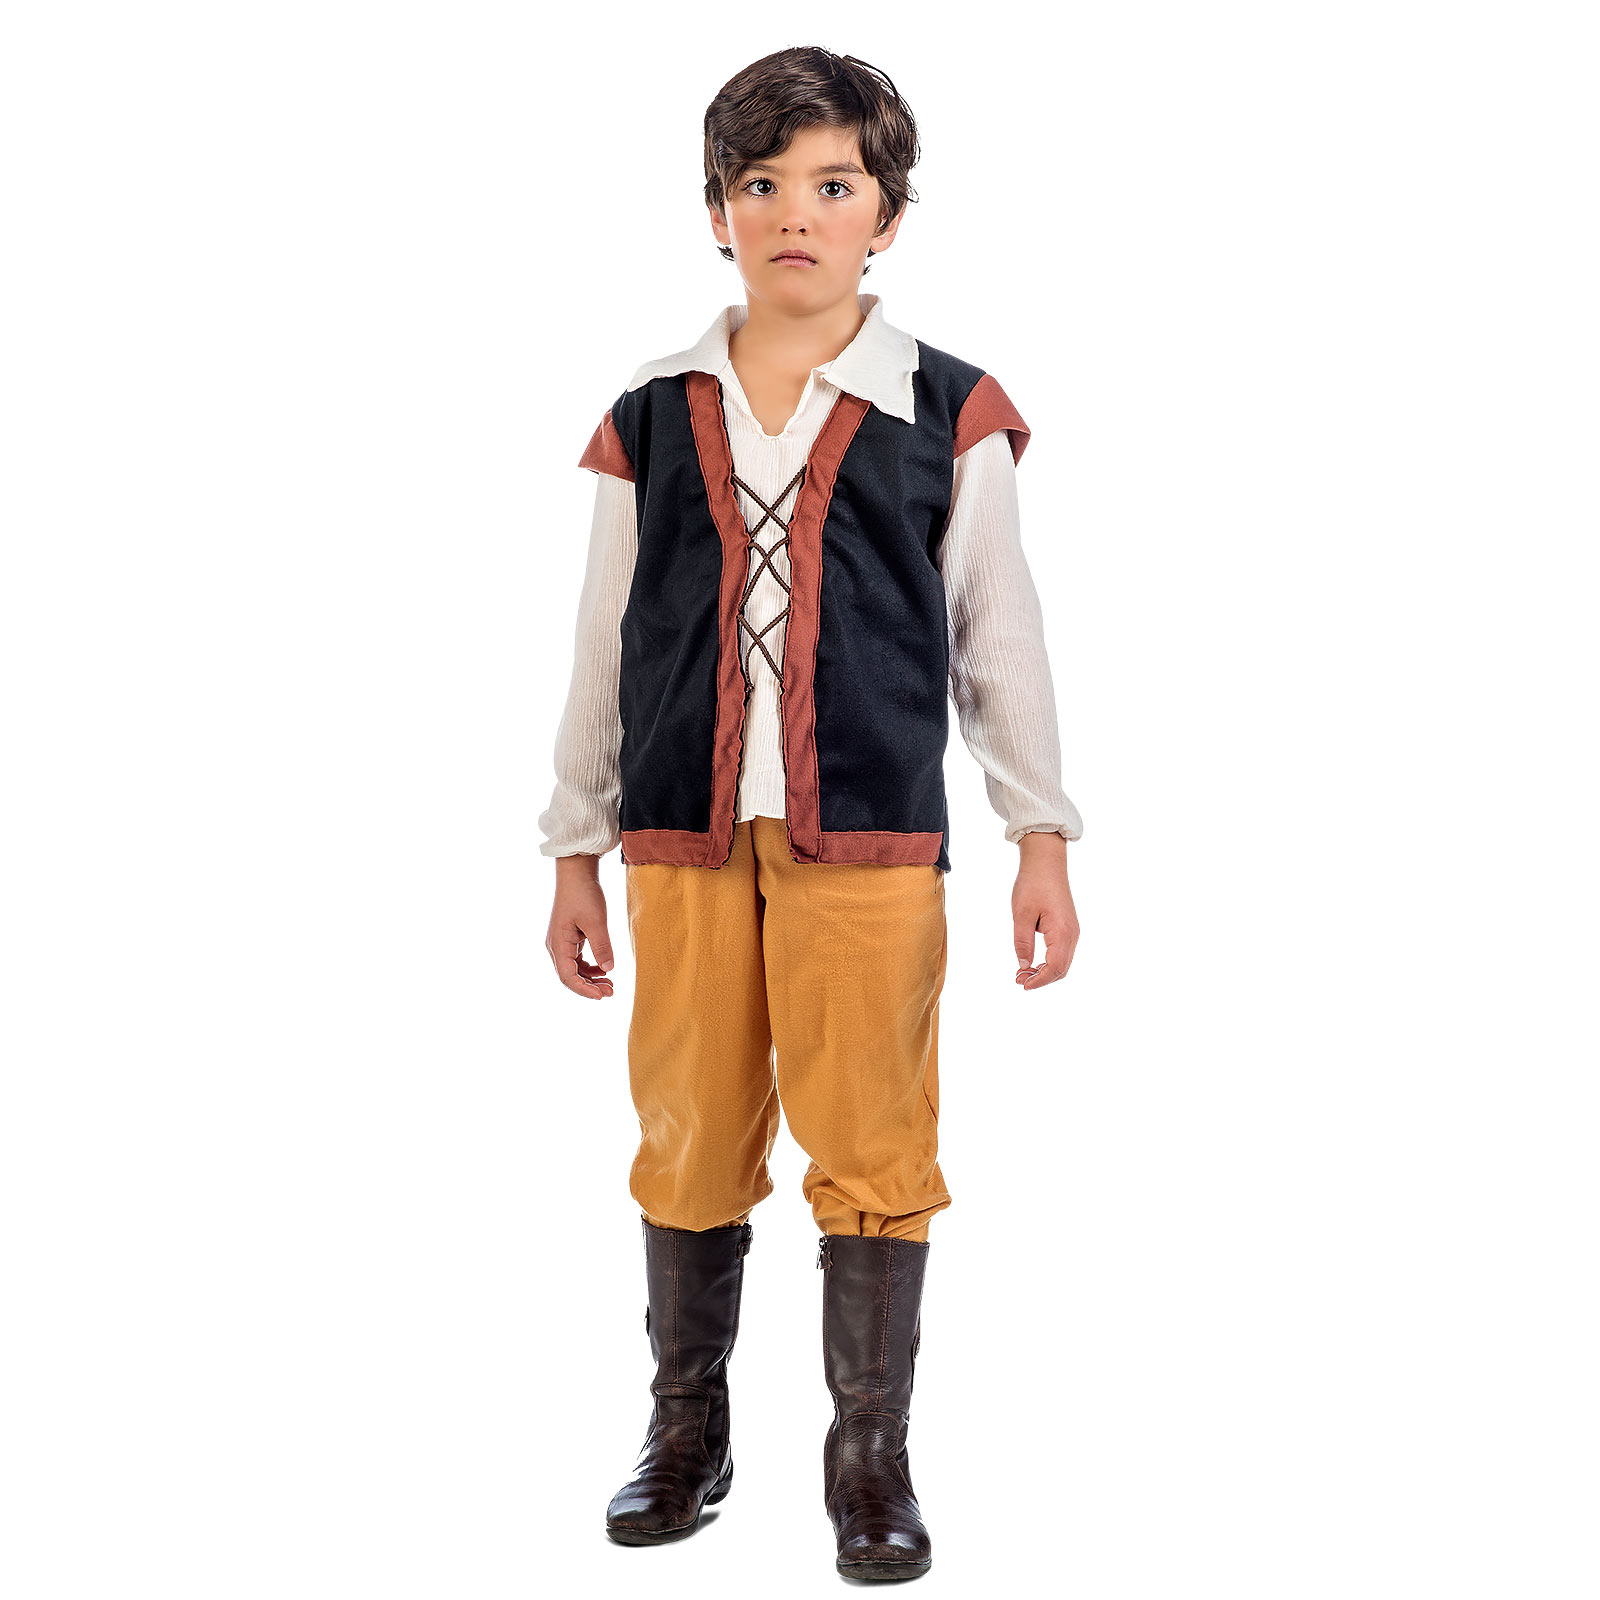 Medieval Peasant - Children's Costume